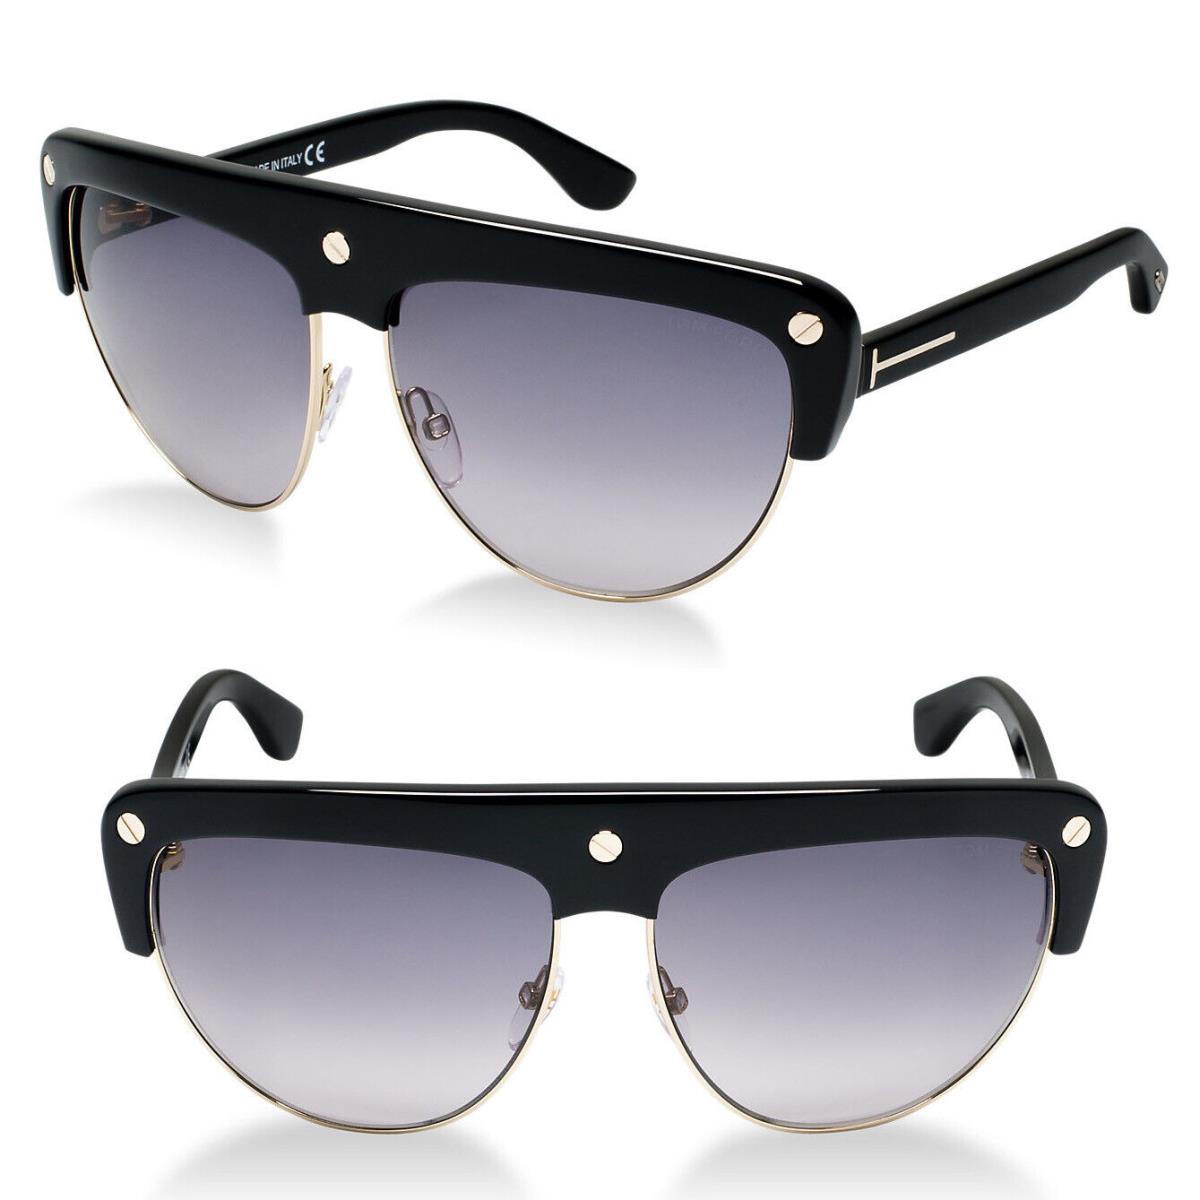 Tom Ford Liane TF 318 01B Sunglasses Shiny Black / Gradient Smoke Lens FT0318